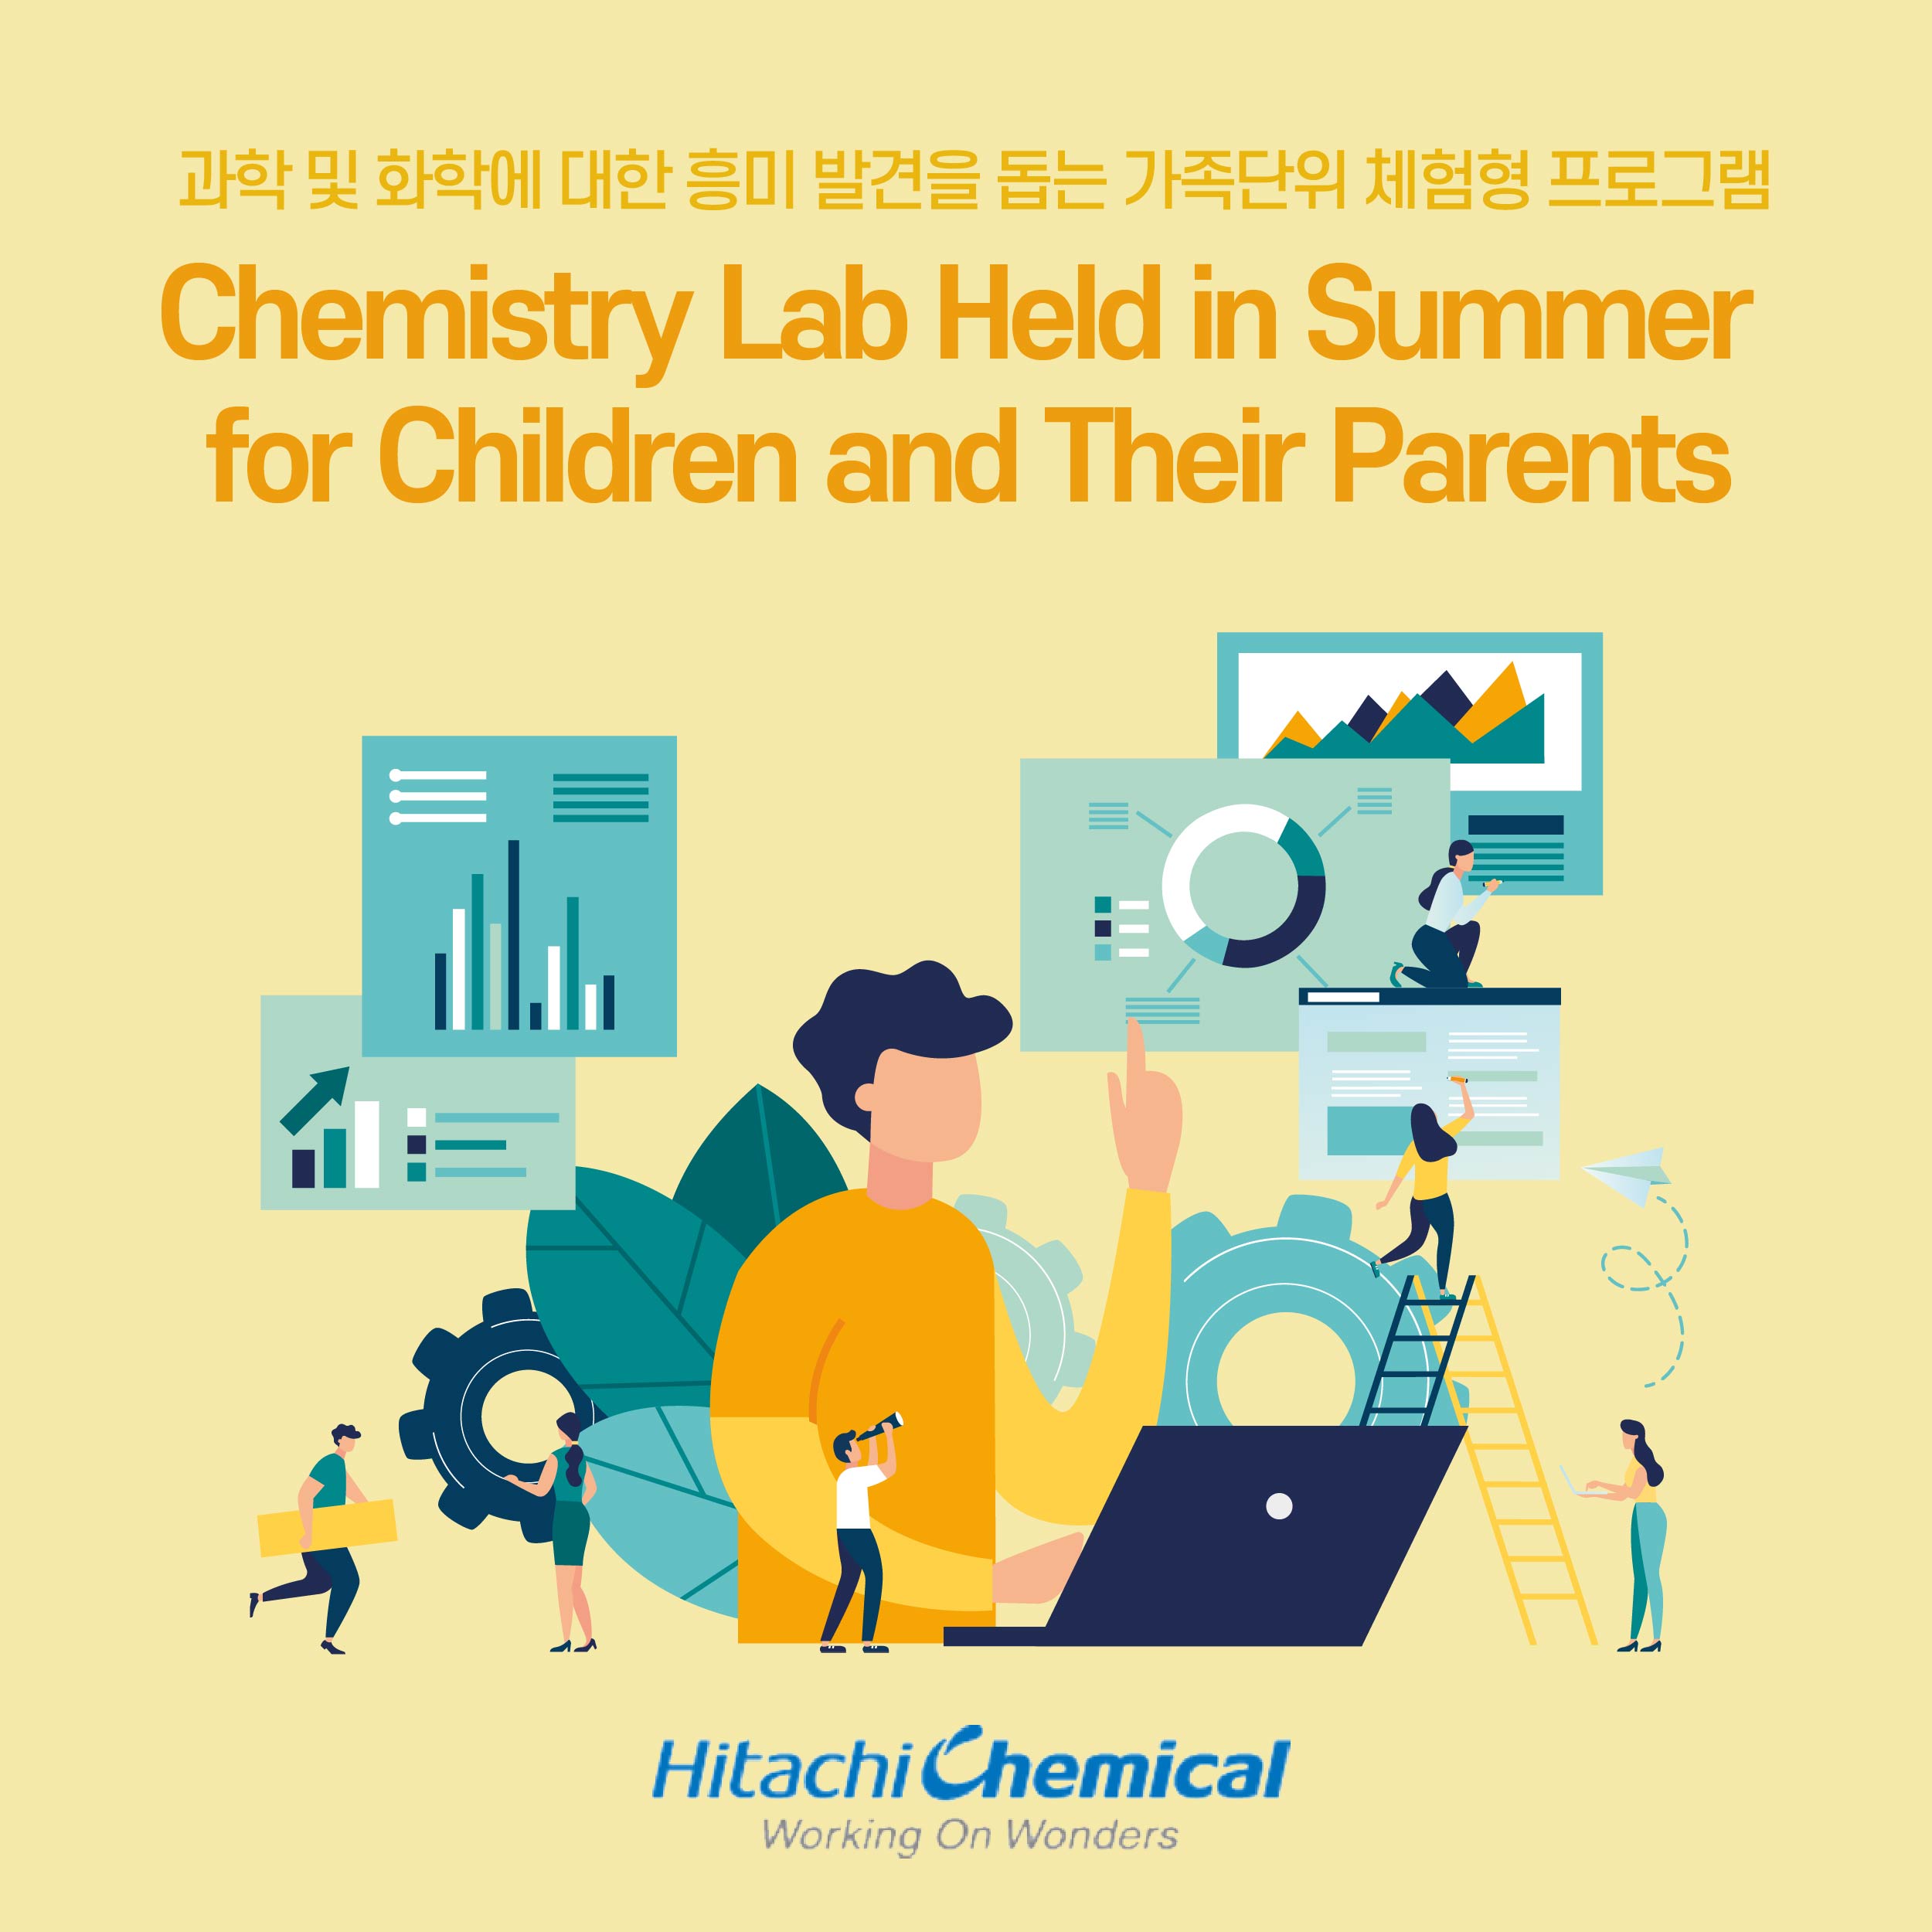 과학 및 화학에 대한 흥미 발견을 돕는 가족단위 체험형 프로그램 chemistry lab held in summer for children and their parents